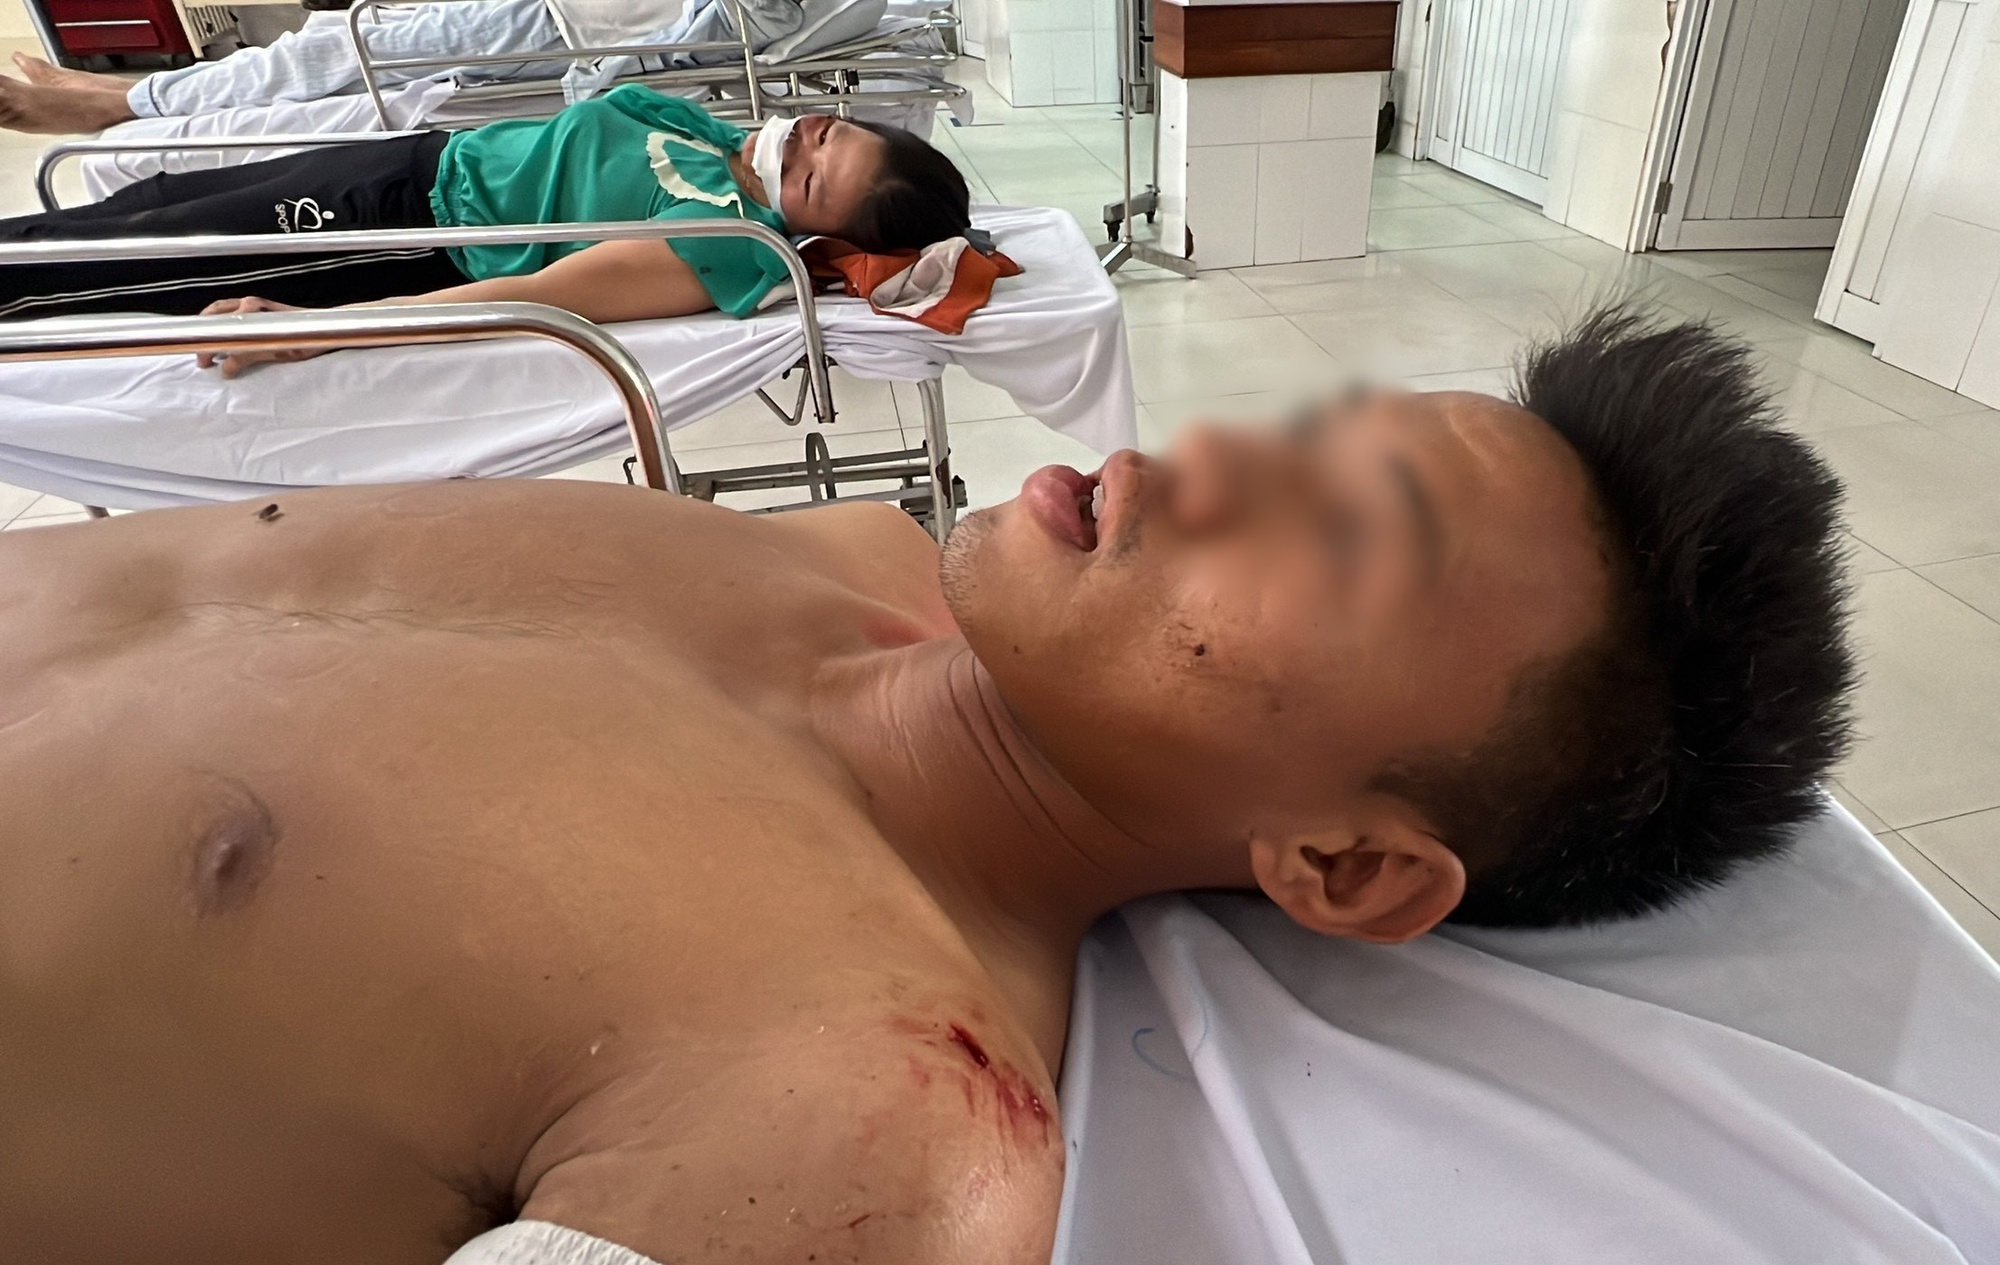 Cầu thủ Quảng Nam hoảng hồn kể lúc xe chở đội bóng mất lái, bị lật trên đèo khiến 4 người thương vong - Ảnh 2.